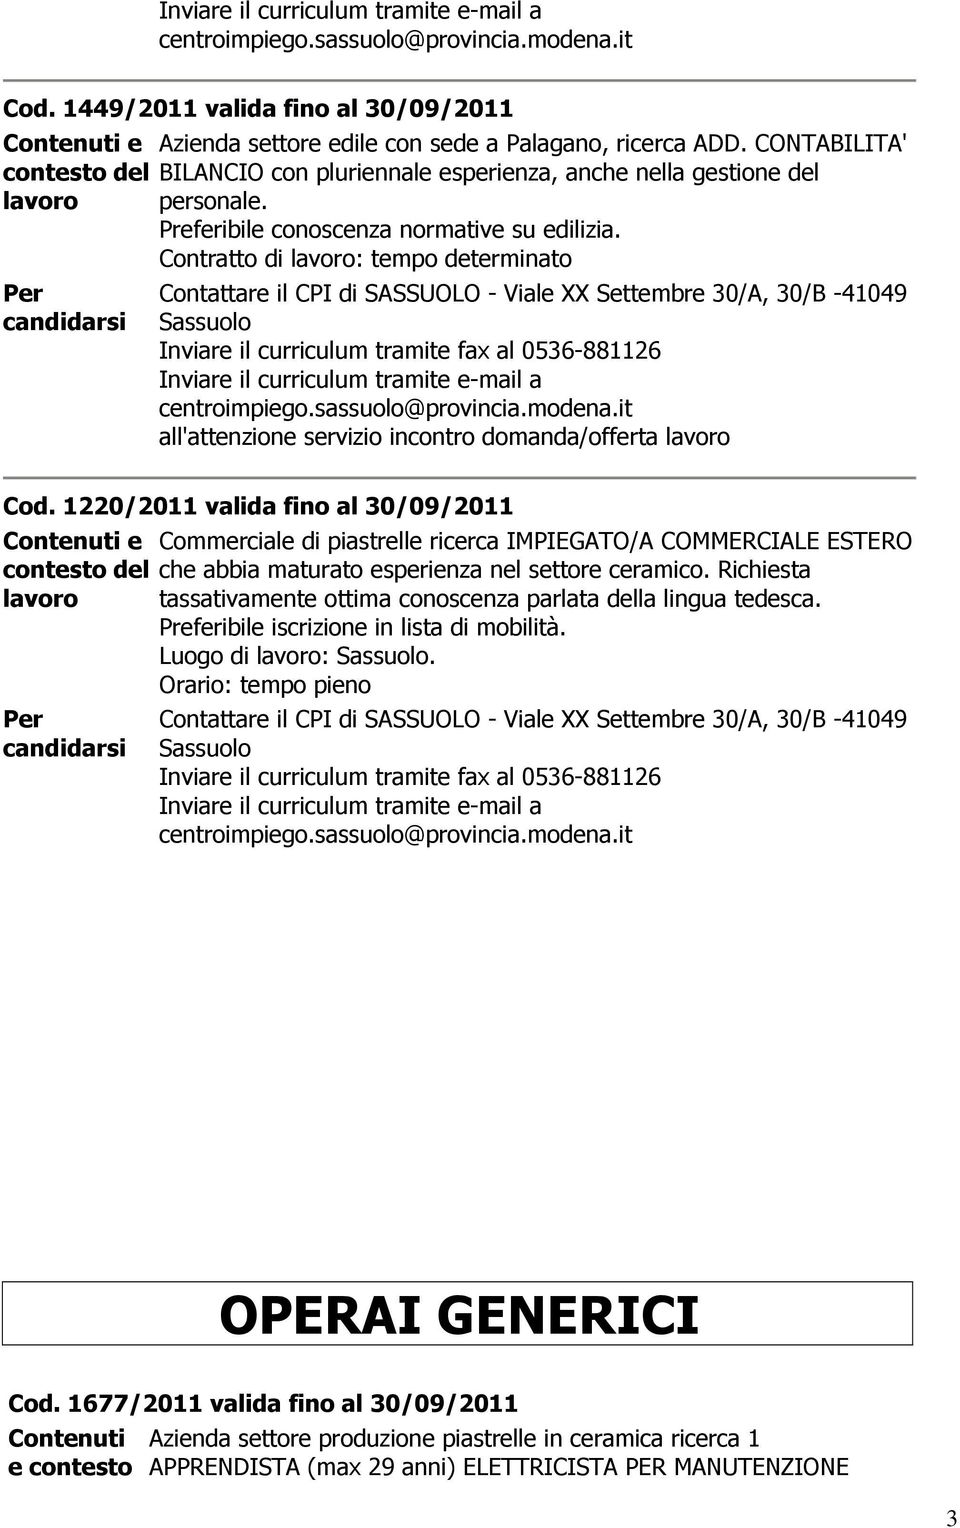 1220/2011 valida fino al 30/09/2011 Commerciale di piastrelle ricerca IMPIEGATO/A COMMERCIALE ESTERO che abbia maturato esperienza nel settore ceramico.